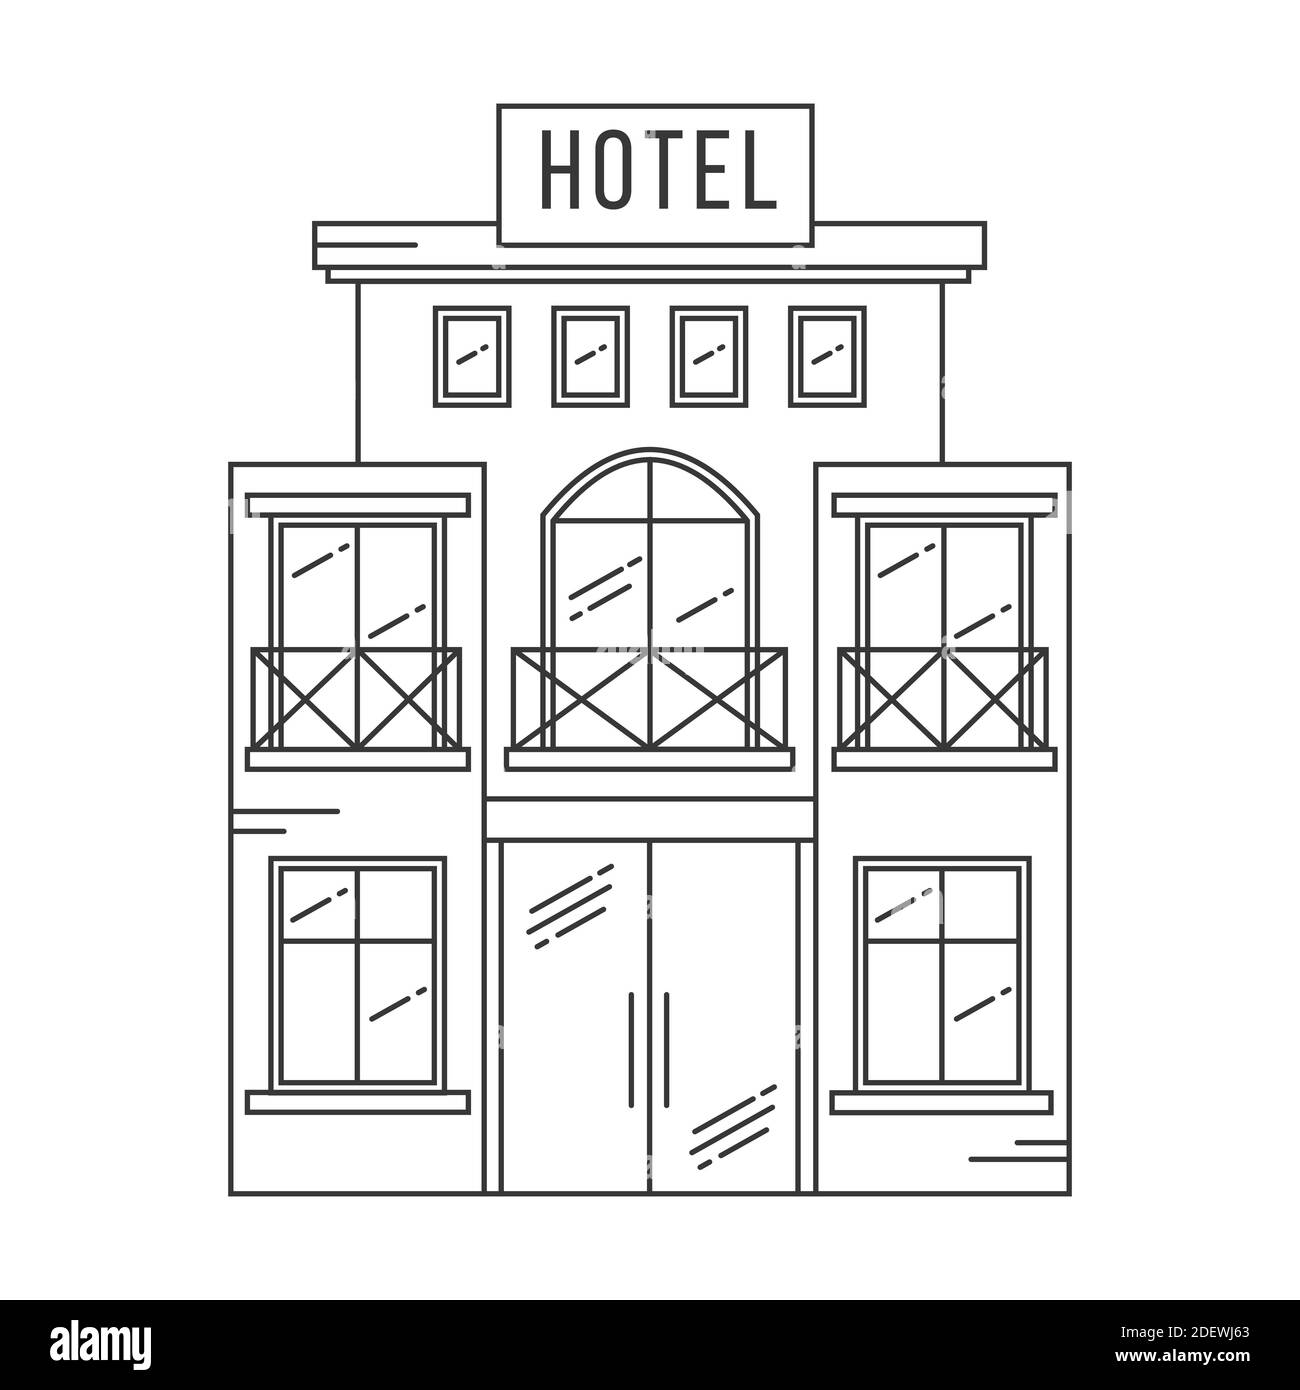 Gebäudebeschreibung des Hotels. Vektorgrafik auf weißem Hintergrund isoliert. Stock Vektor